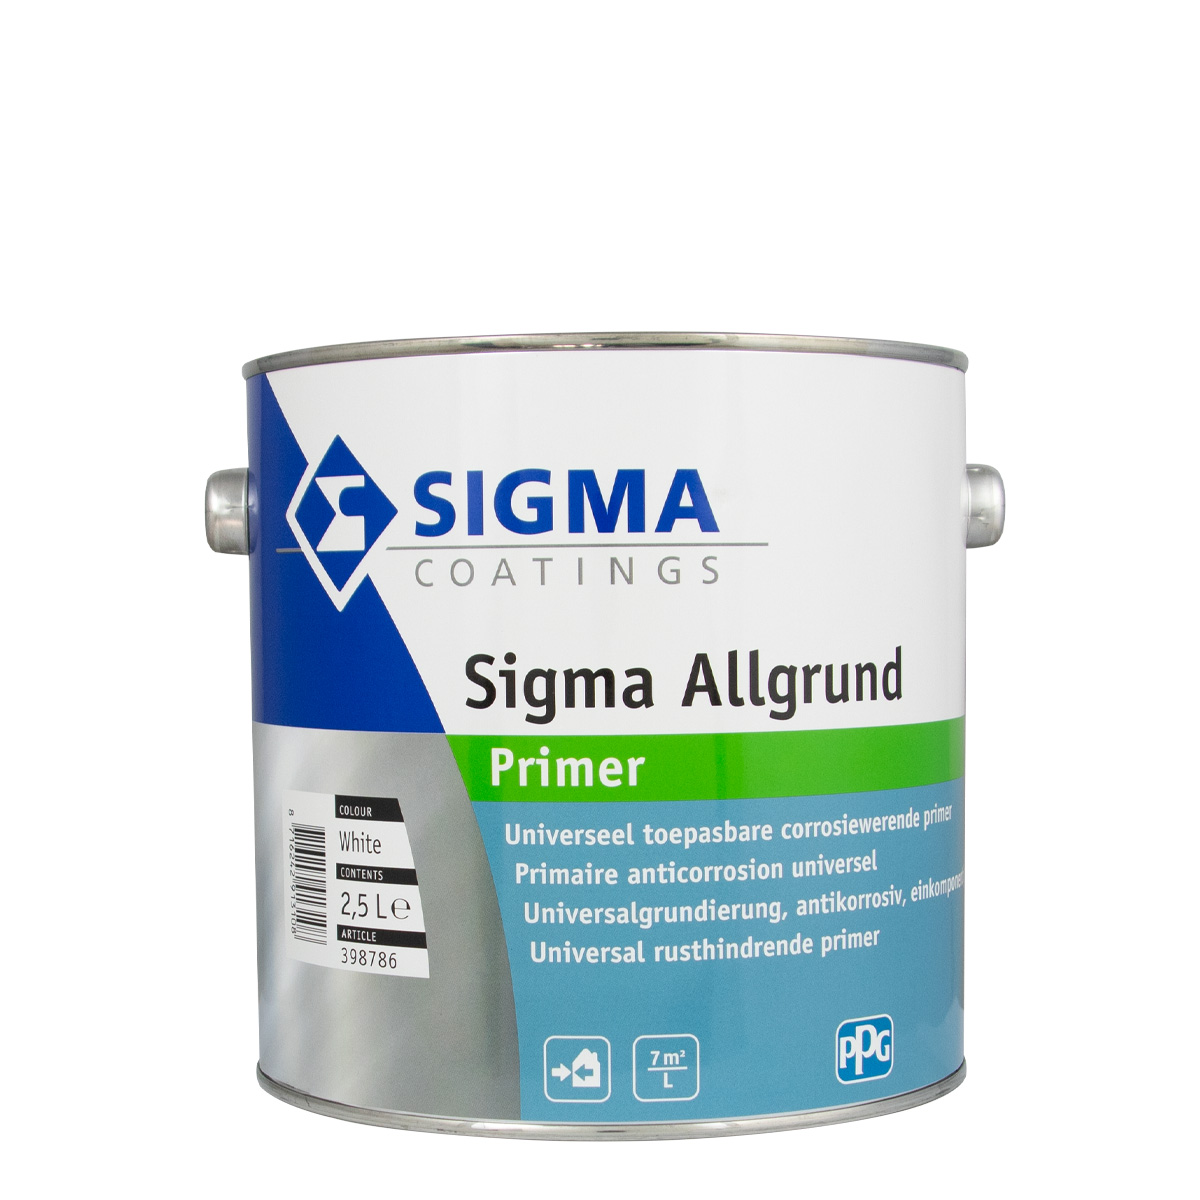 Sigma Allgrund weiss 2,5L, Universalgrundierung, Primer